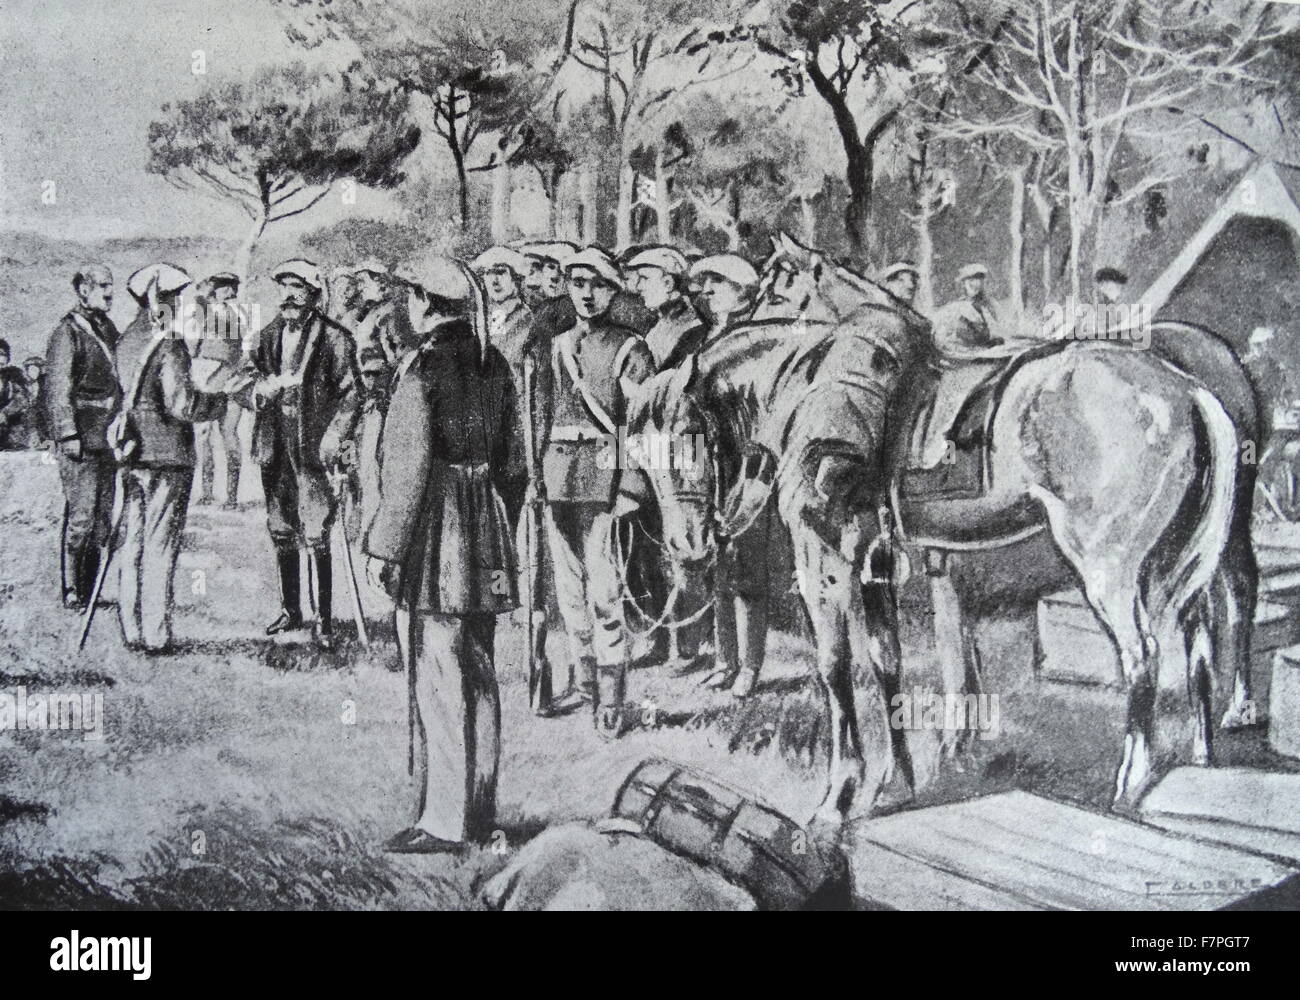 Incisione raffigurante la prima insurrezione carlista della guerra carlista (1833-1839) una guerra civile in Spagna Foto Stock